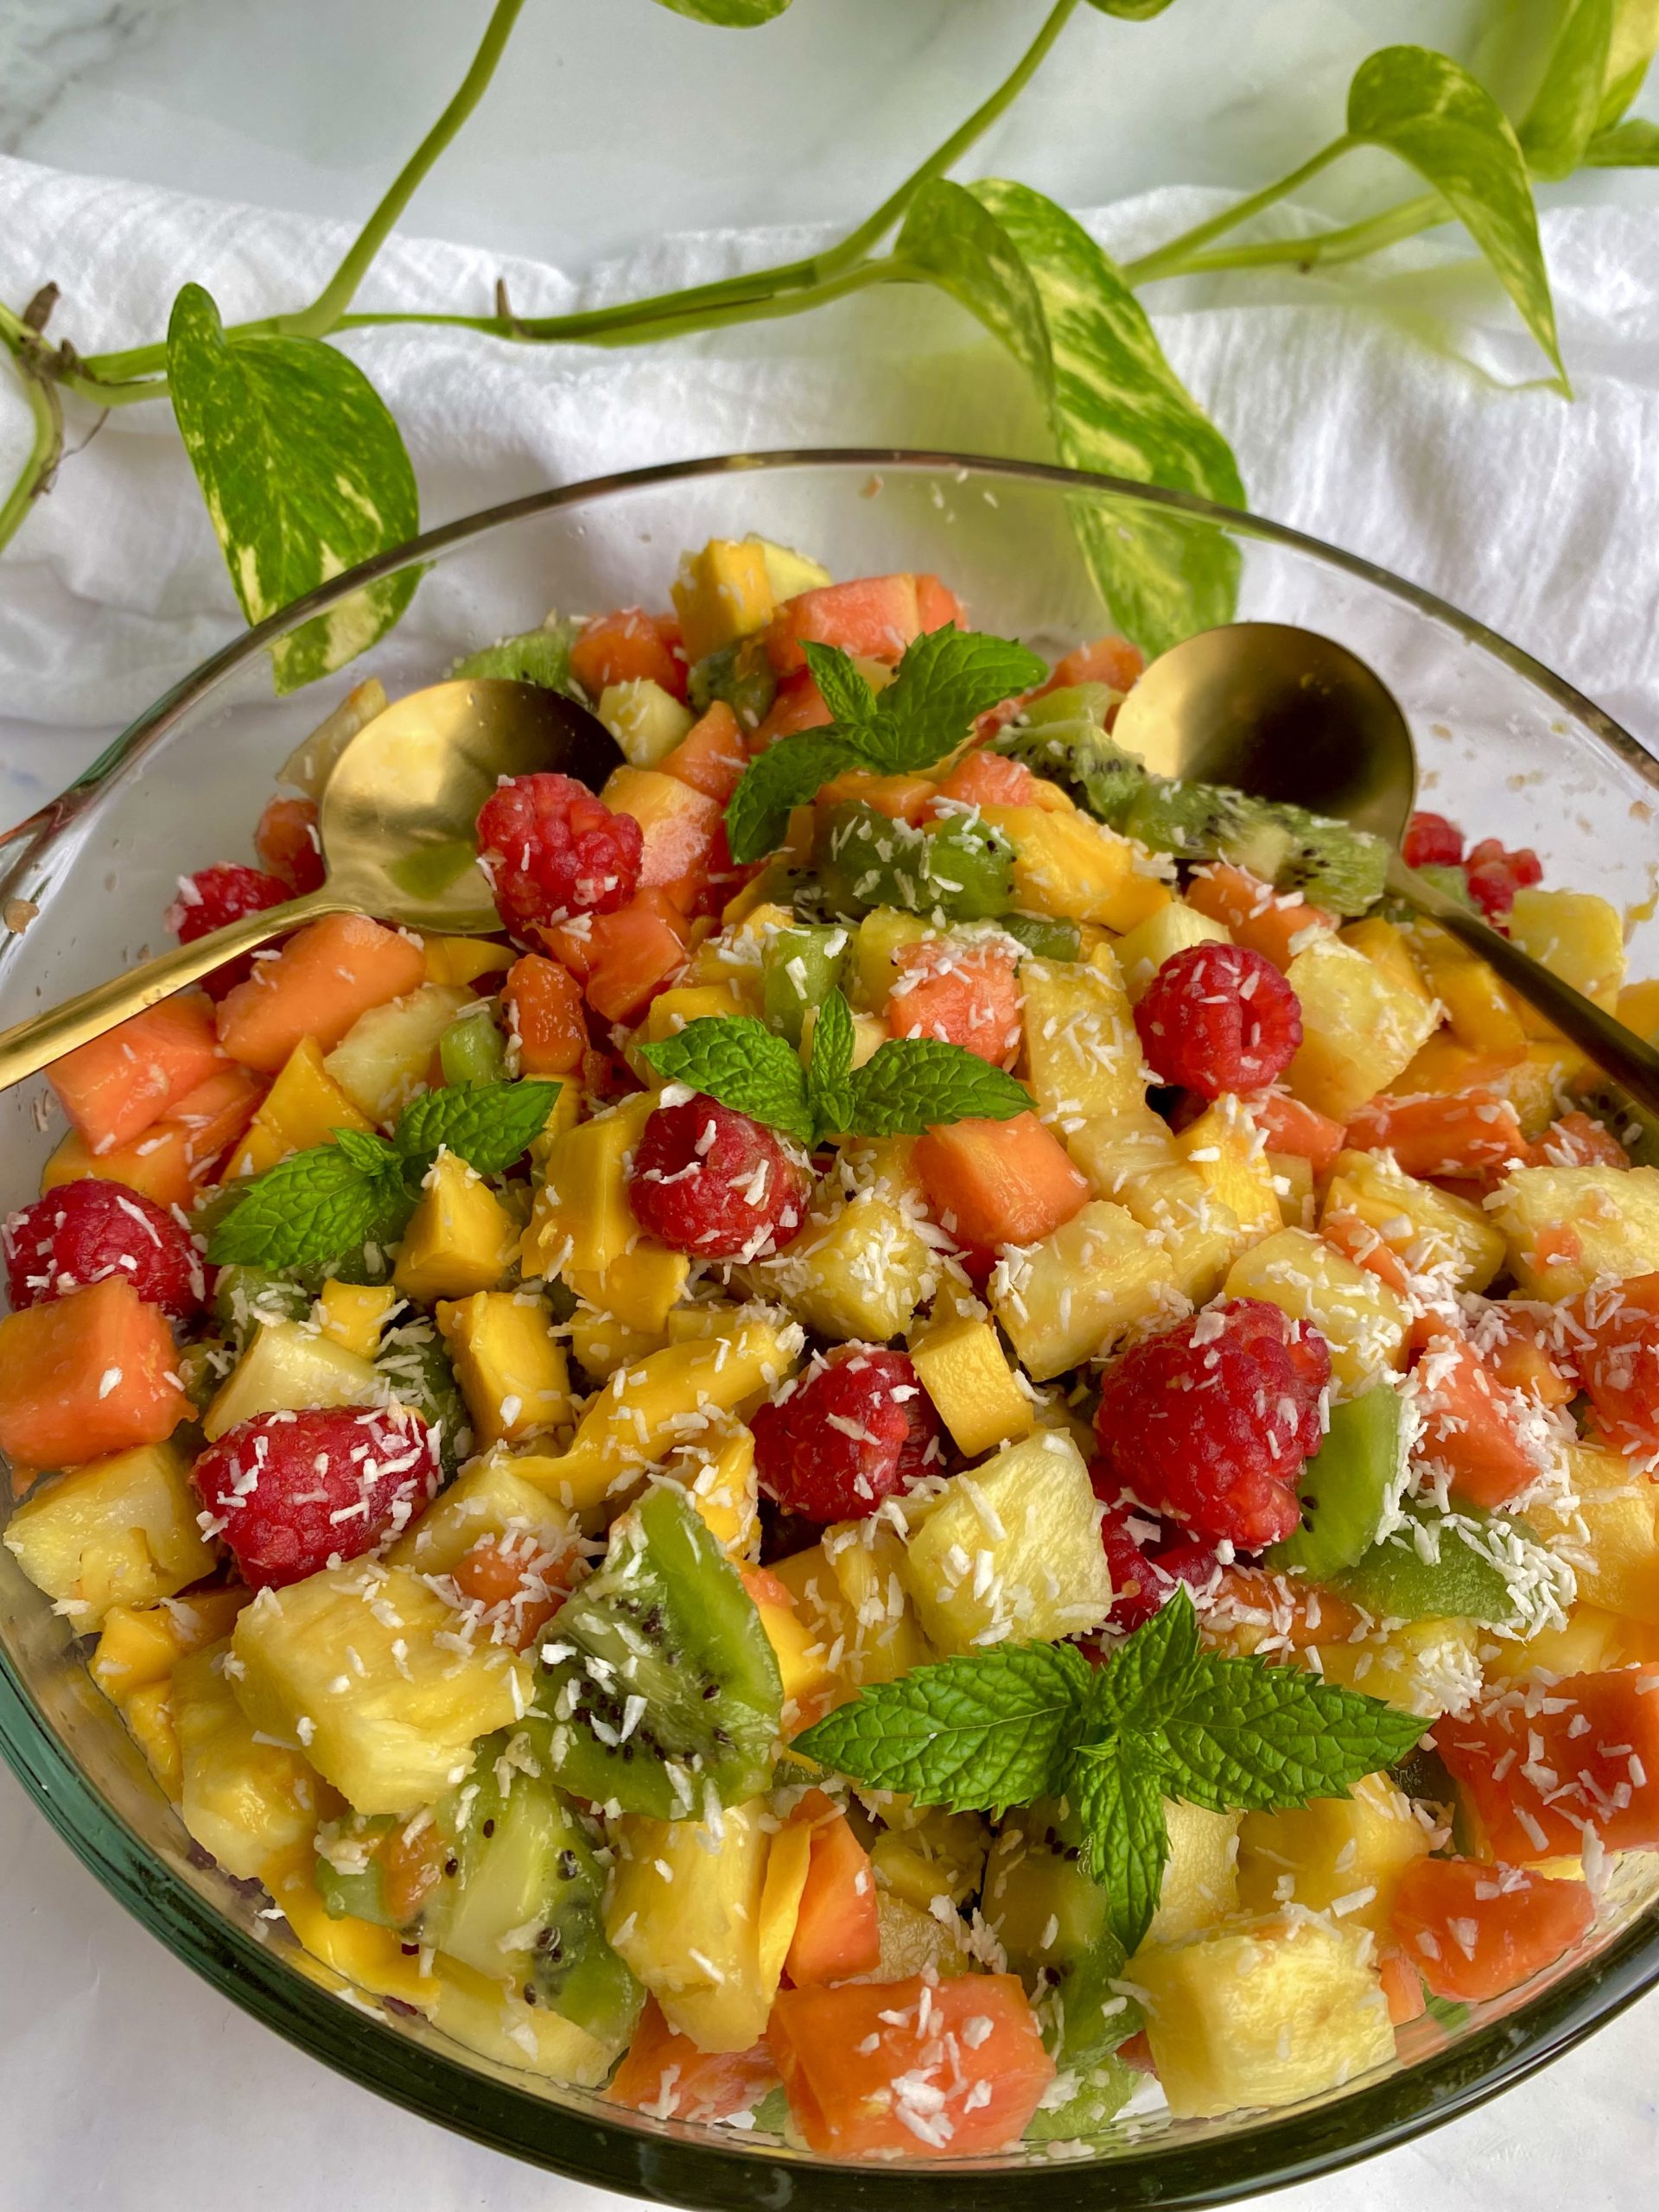 Tropical Fruit Salad with Papaya